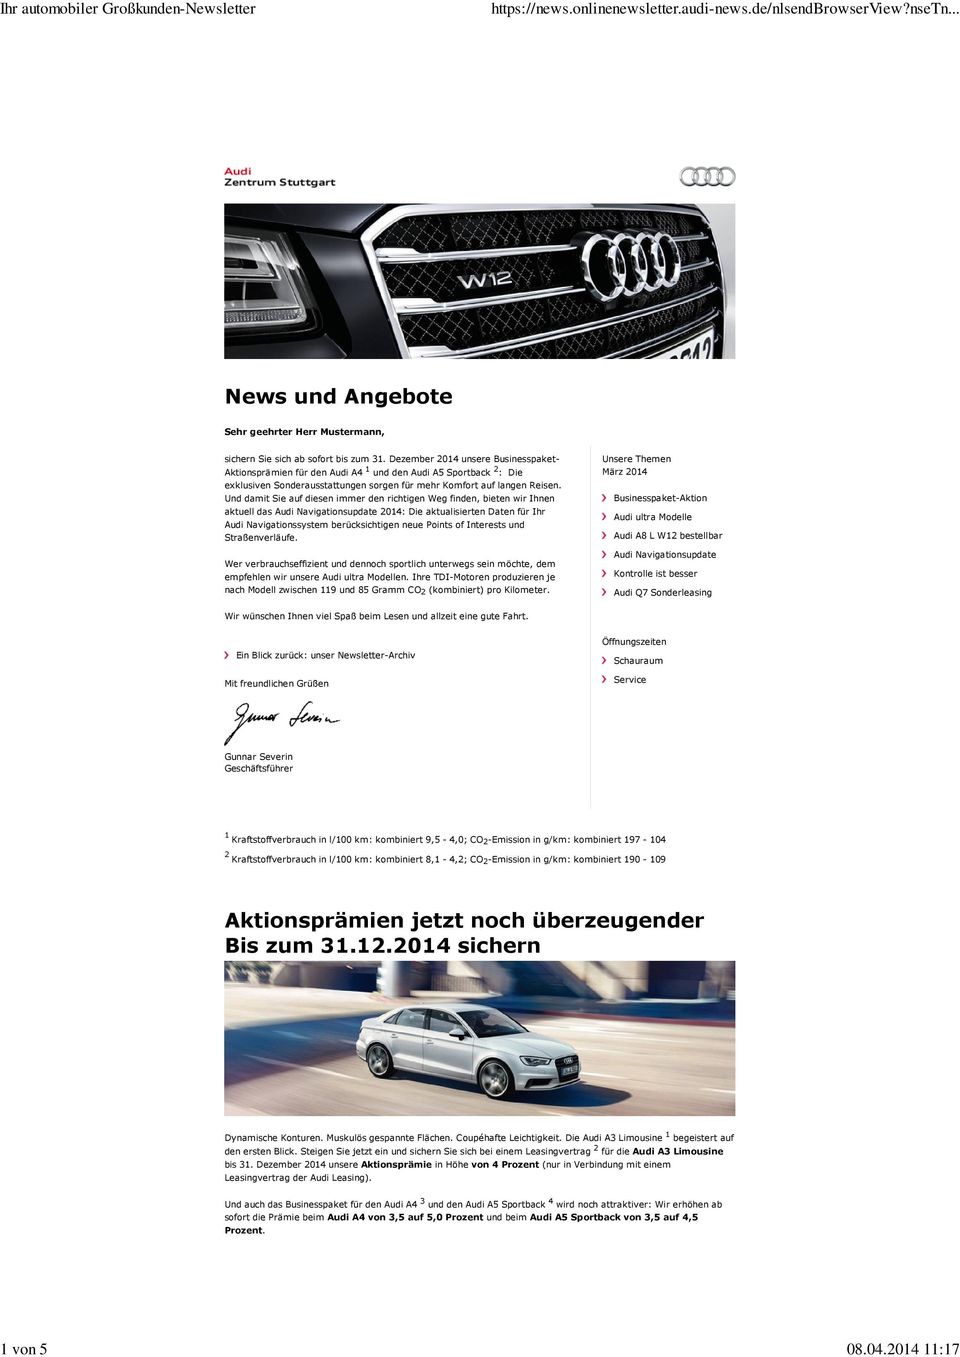 Und damit Sie auf diesen immer den richtigen Weg finden, bieten wir Ihnen aktuell das Audi Navigationsupdate 2014: Die aktualisierten Daten für Ihr Audi Navigationssystem berücksichtigen neue Points